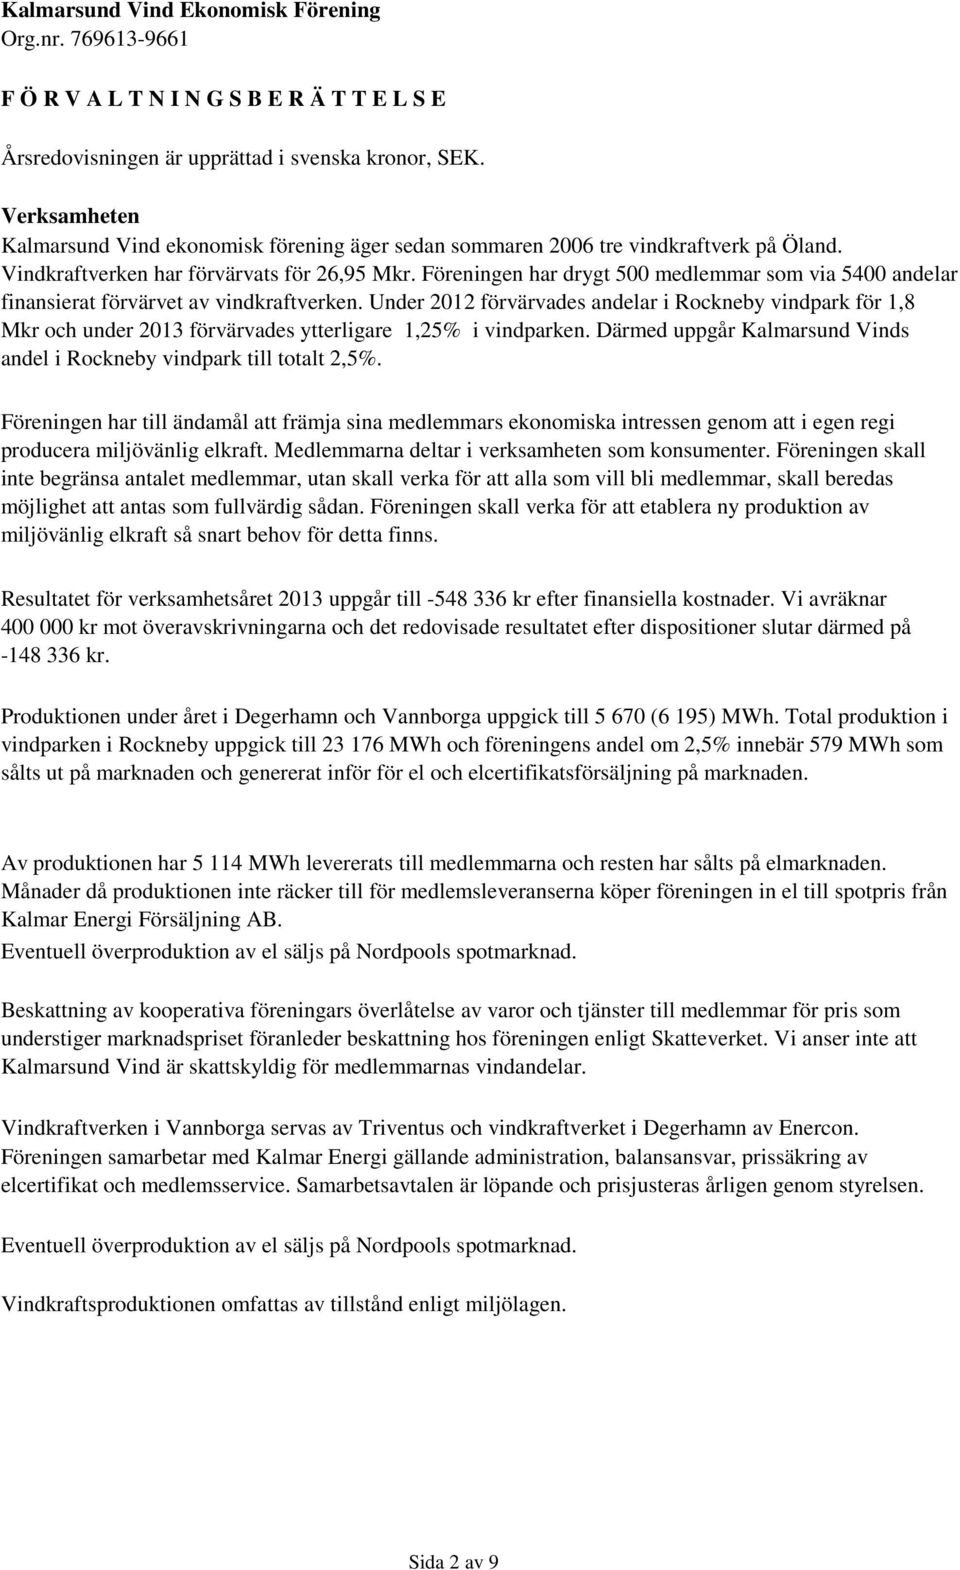 Under 2012 förvärvades andelar i Rockneby vindpark för 1,8 Mkr och under 2013 förvärvades ytterligare 1,25% i vindparken. Därmed uppgår Kalmarsund Vinds andel i Rockneby vindpark till totalt 2,5%.